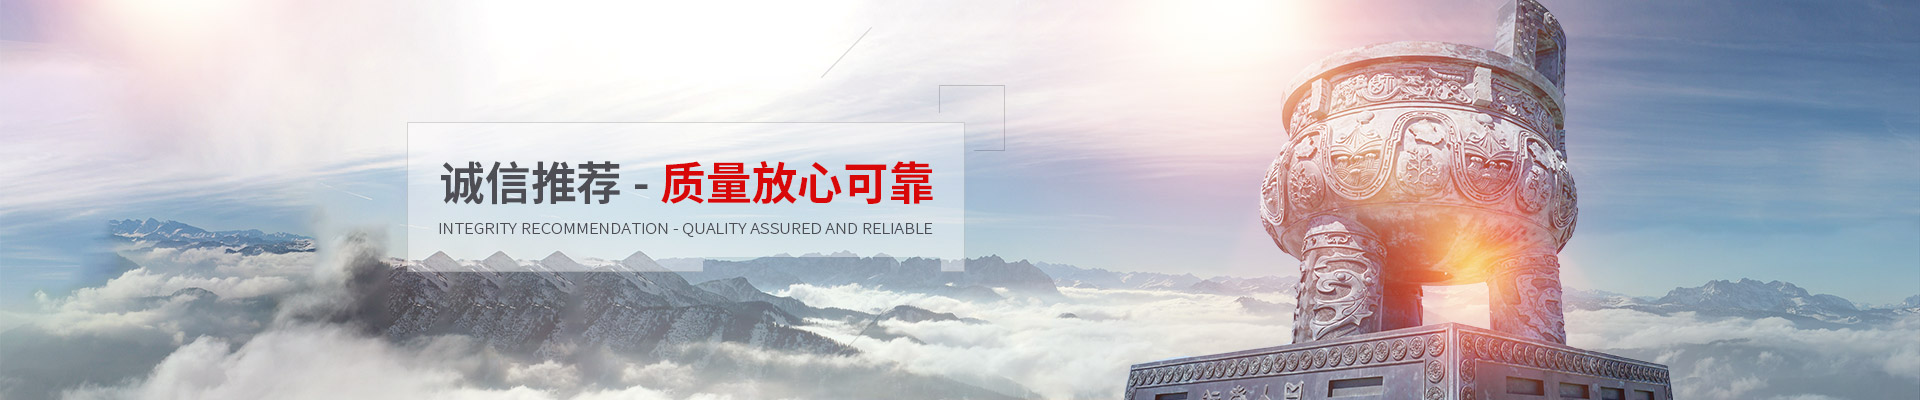 上海运营五金电器收费标准,五金电器